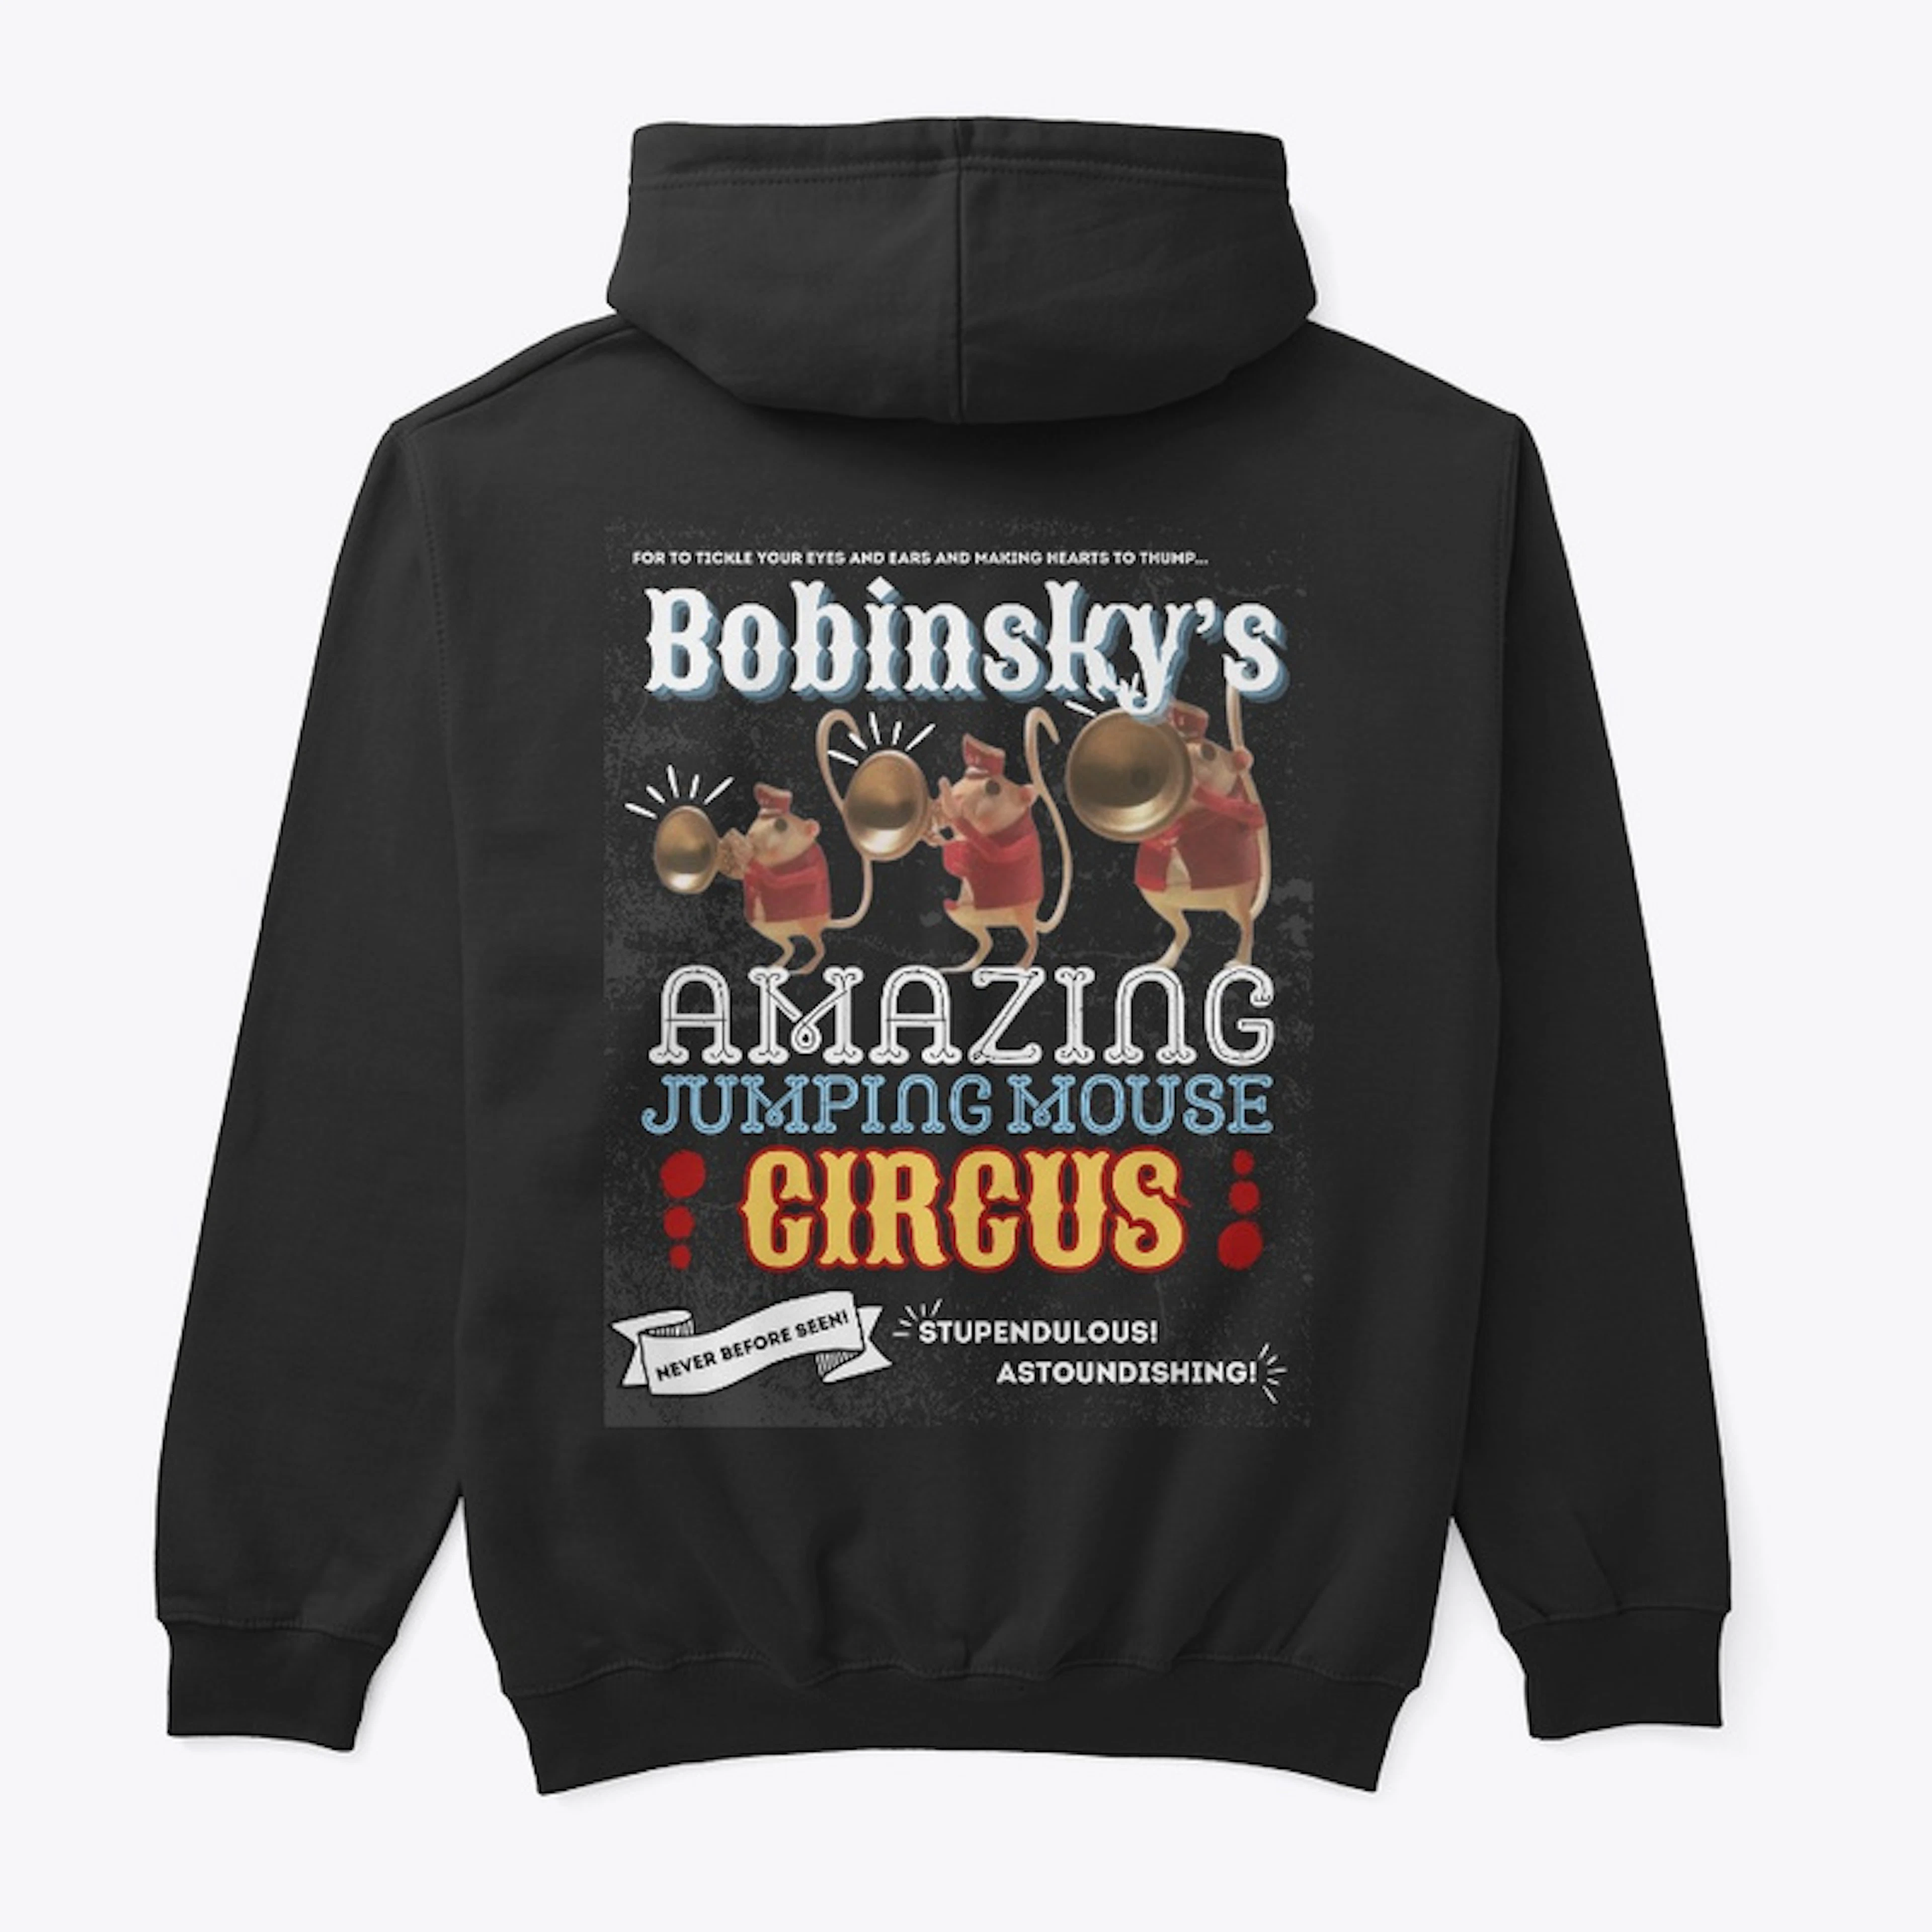 "Bobinsky's Jumping Mouse Circus" 2